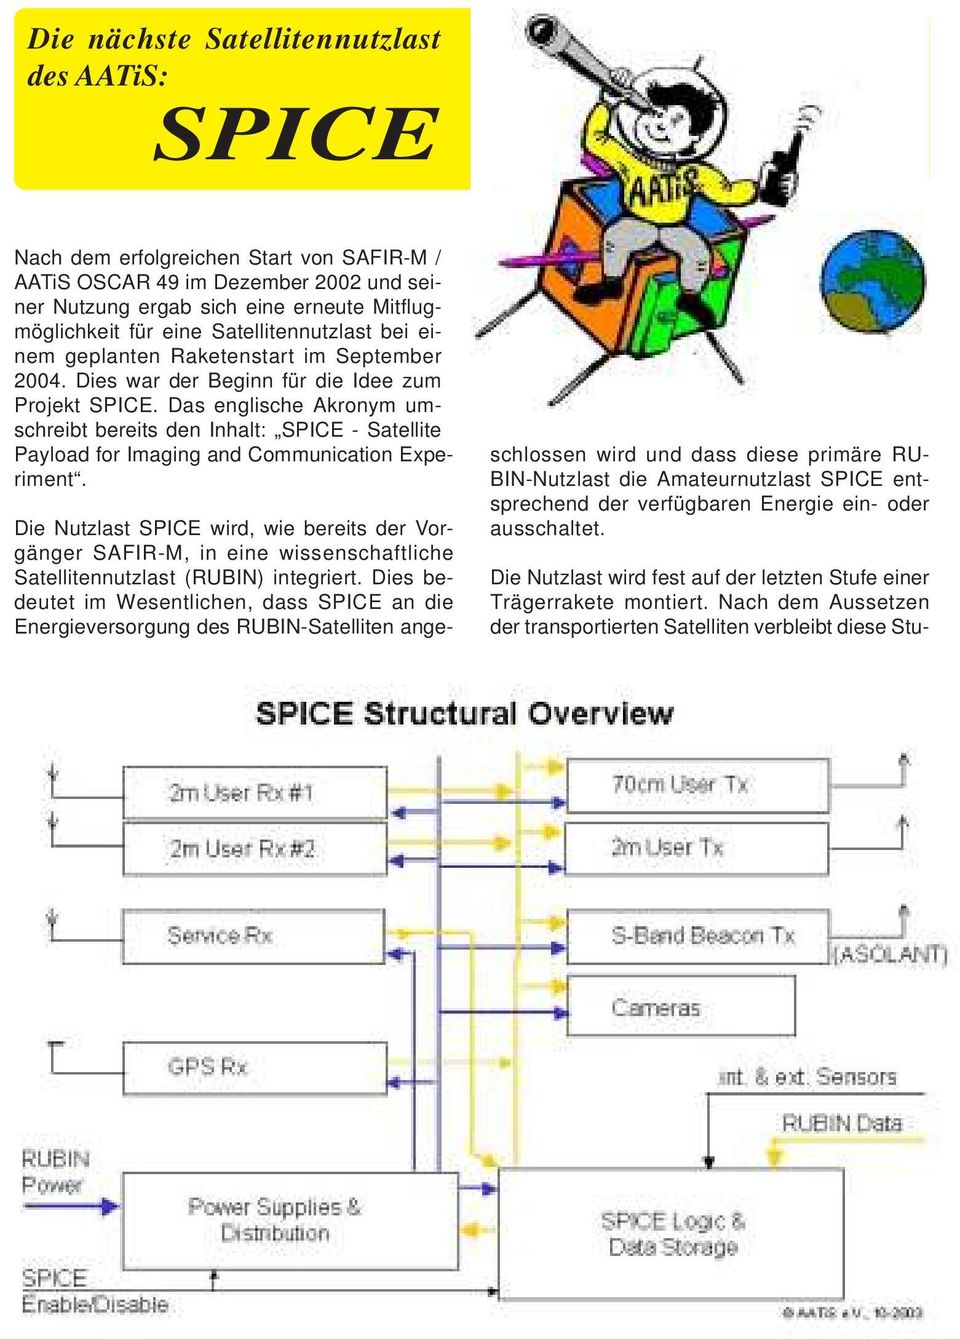 Das englische Akronym umschreibt bereits den Inhalt: SPICE - Satellite Payload for Imaging and Communication Experiment.